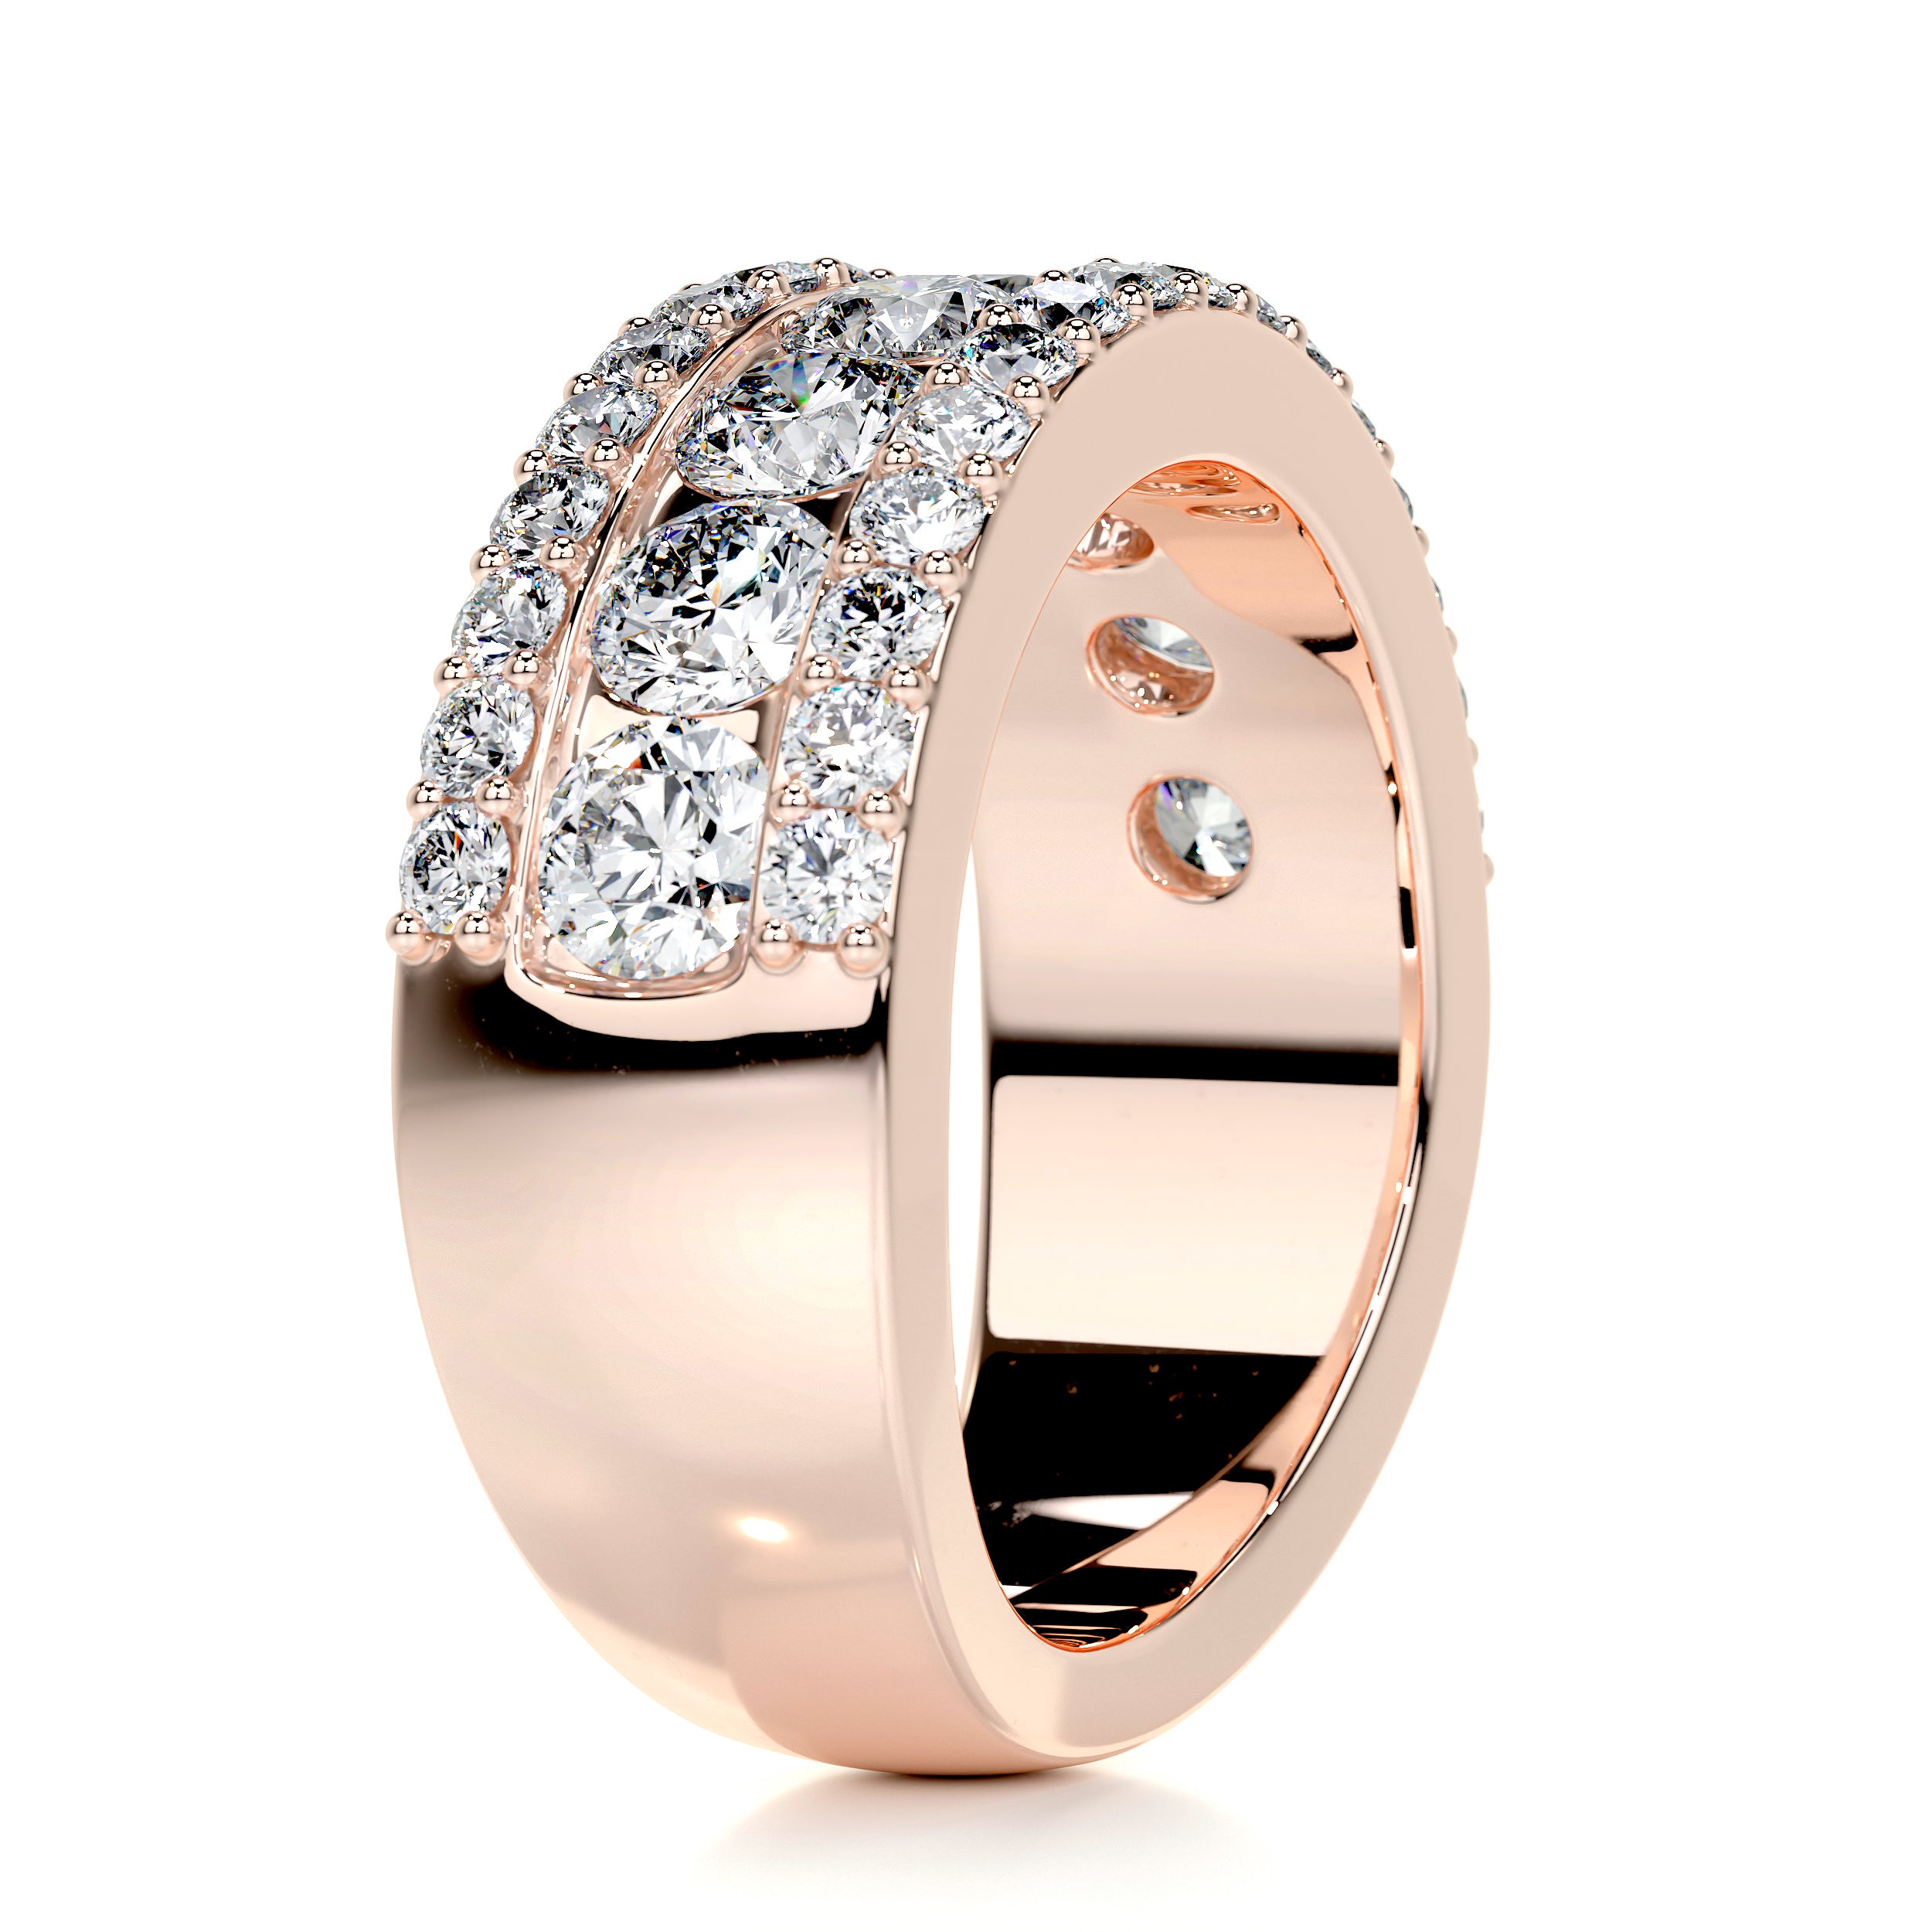 Nia Diamond Wedding Ring   (2 Carat) -14K Rose Gold